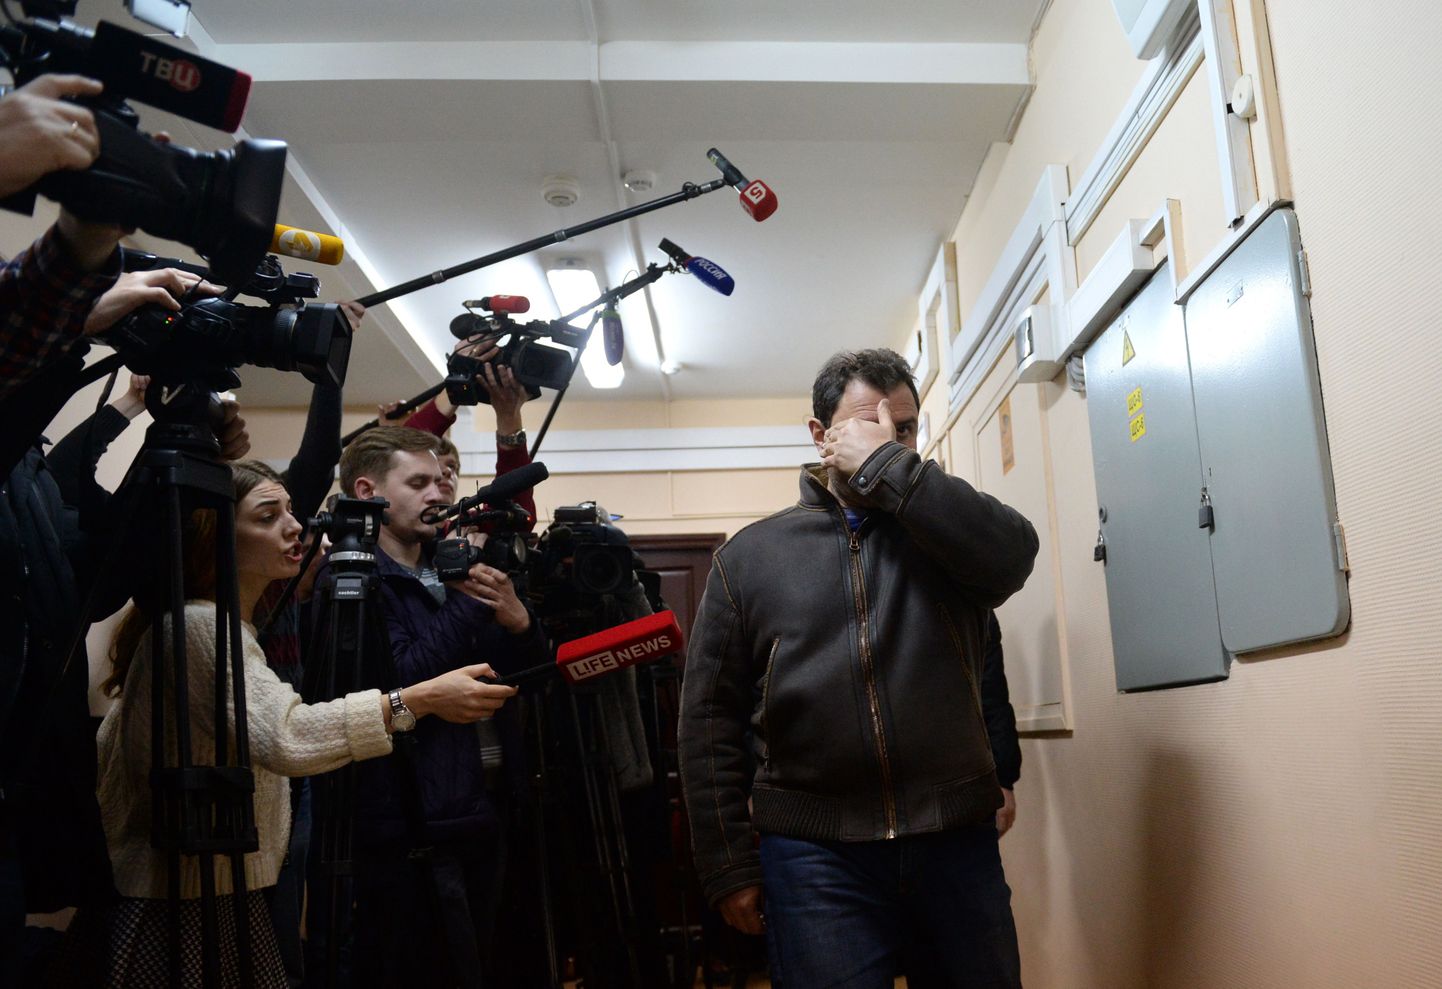 От репортеров и камер Пирумов закрывал лицо листком бумаги и не отвечал на вопросы журналистов, а во время процесса вел себя уверенно, был немногословен и хмур.